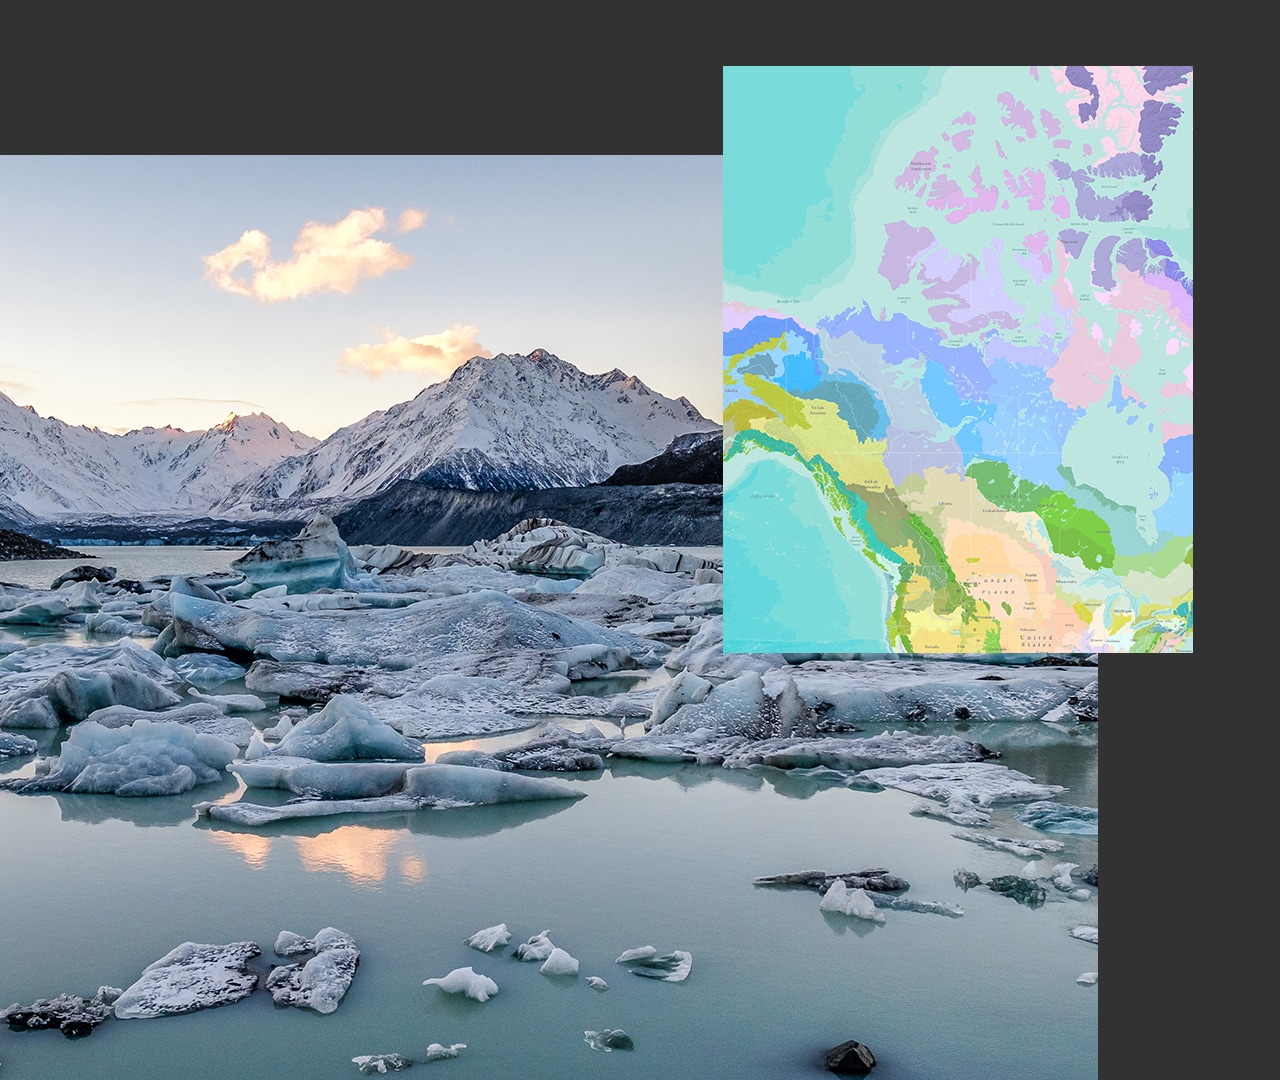 Großes Bild mit schneebedeckten Bergen und Gletschern im Wasser, daneben eine mehrfarbige Karte mit Land und Wasser